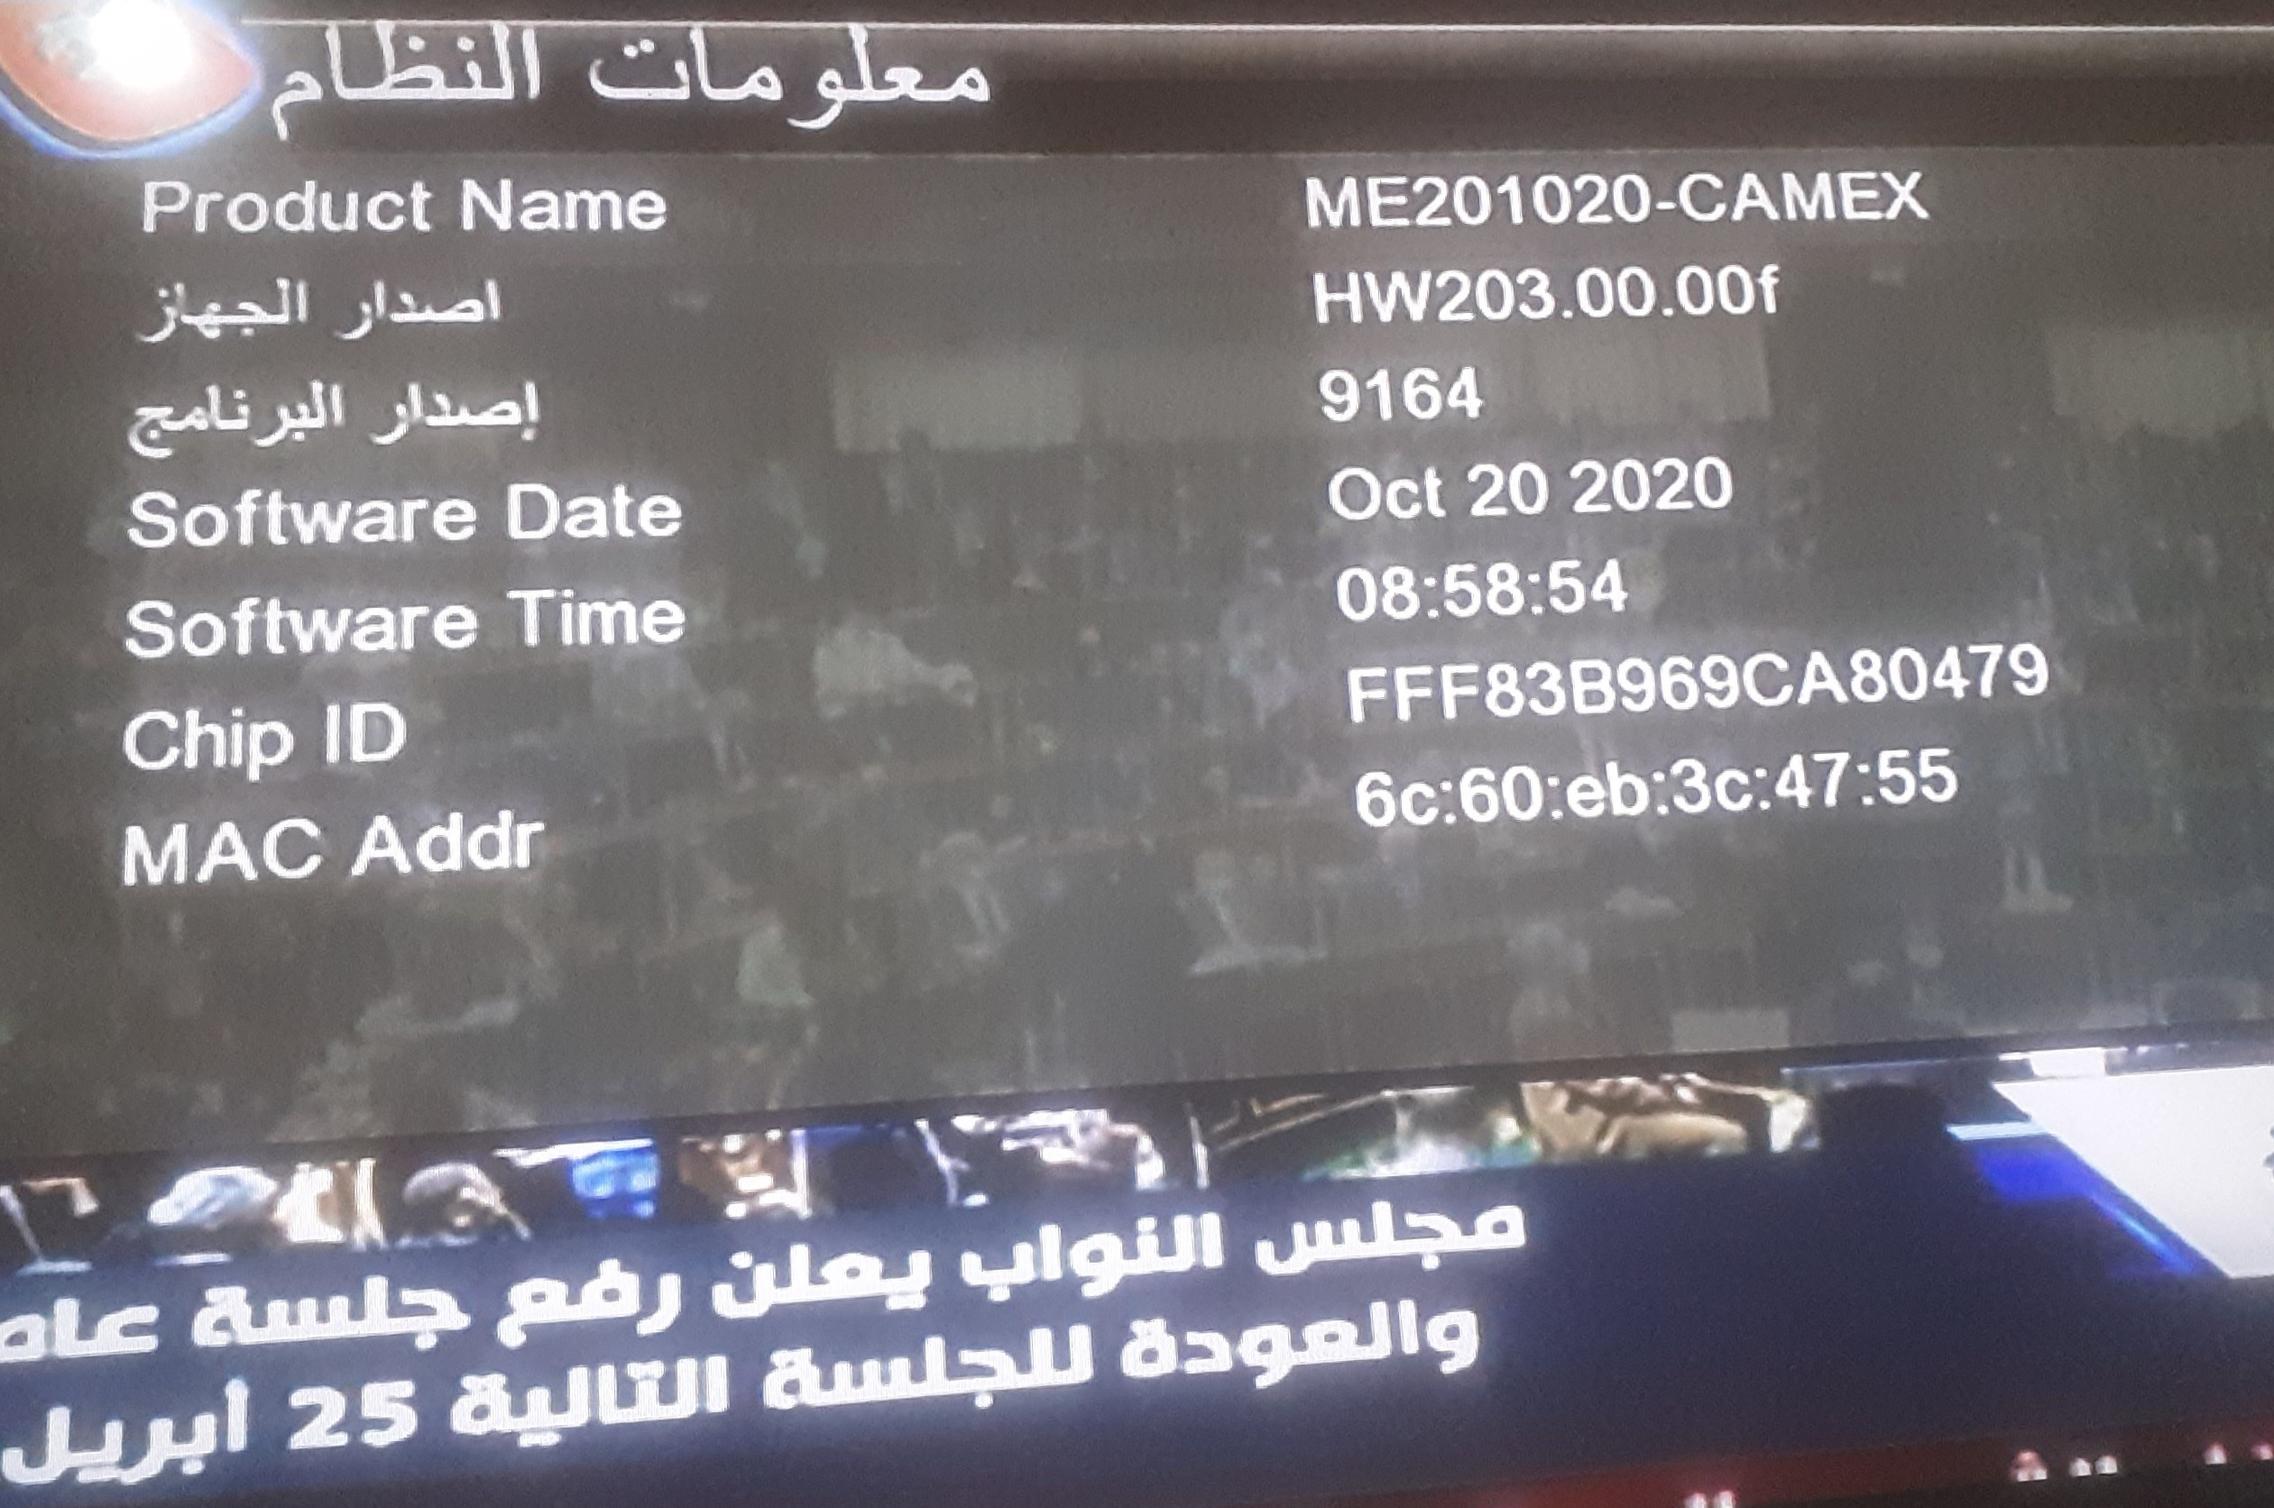 احدث ملف عربي REDBOX RX-9000 HD MINI وroyal 999 الاحمرالمزود بـ2 شاشة رقمية و CAMEX الاسود 16-8-2023 P_24840jjjg2